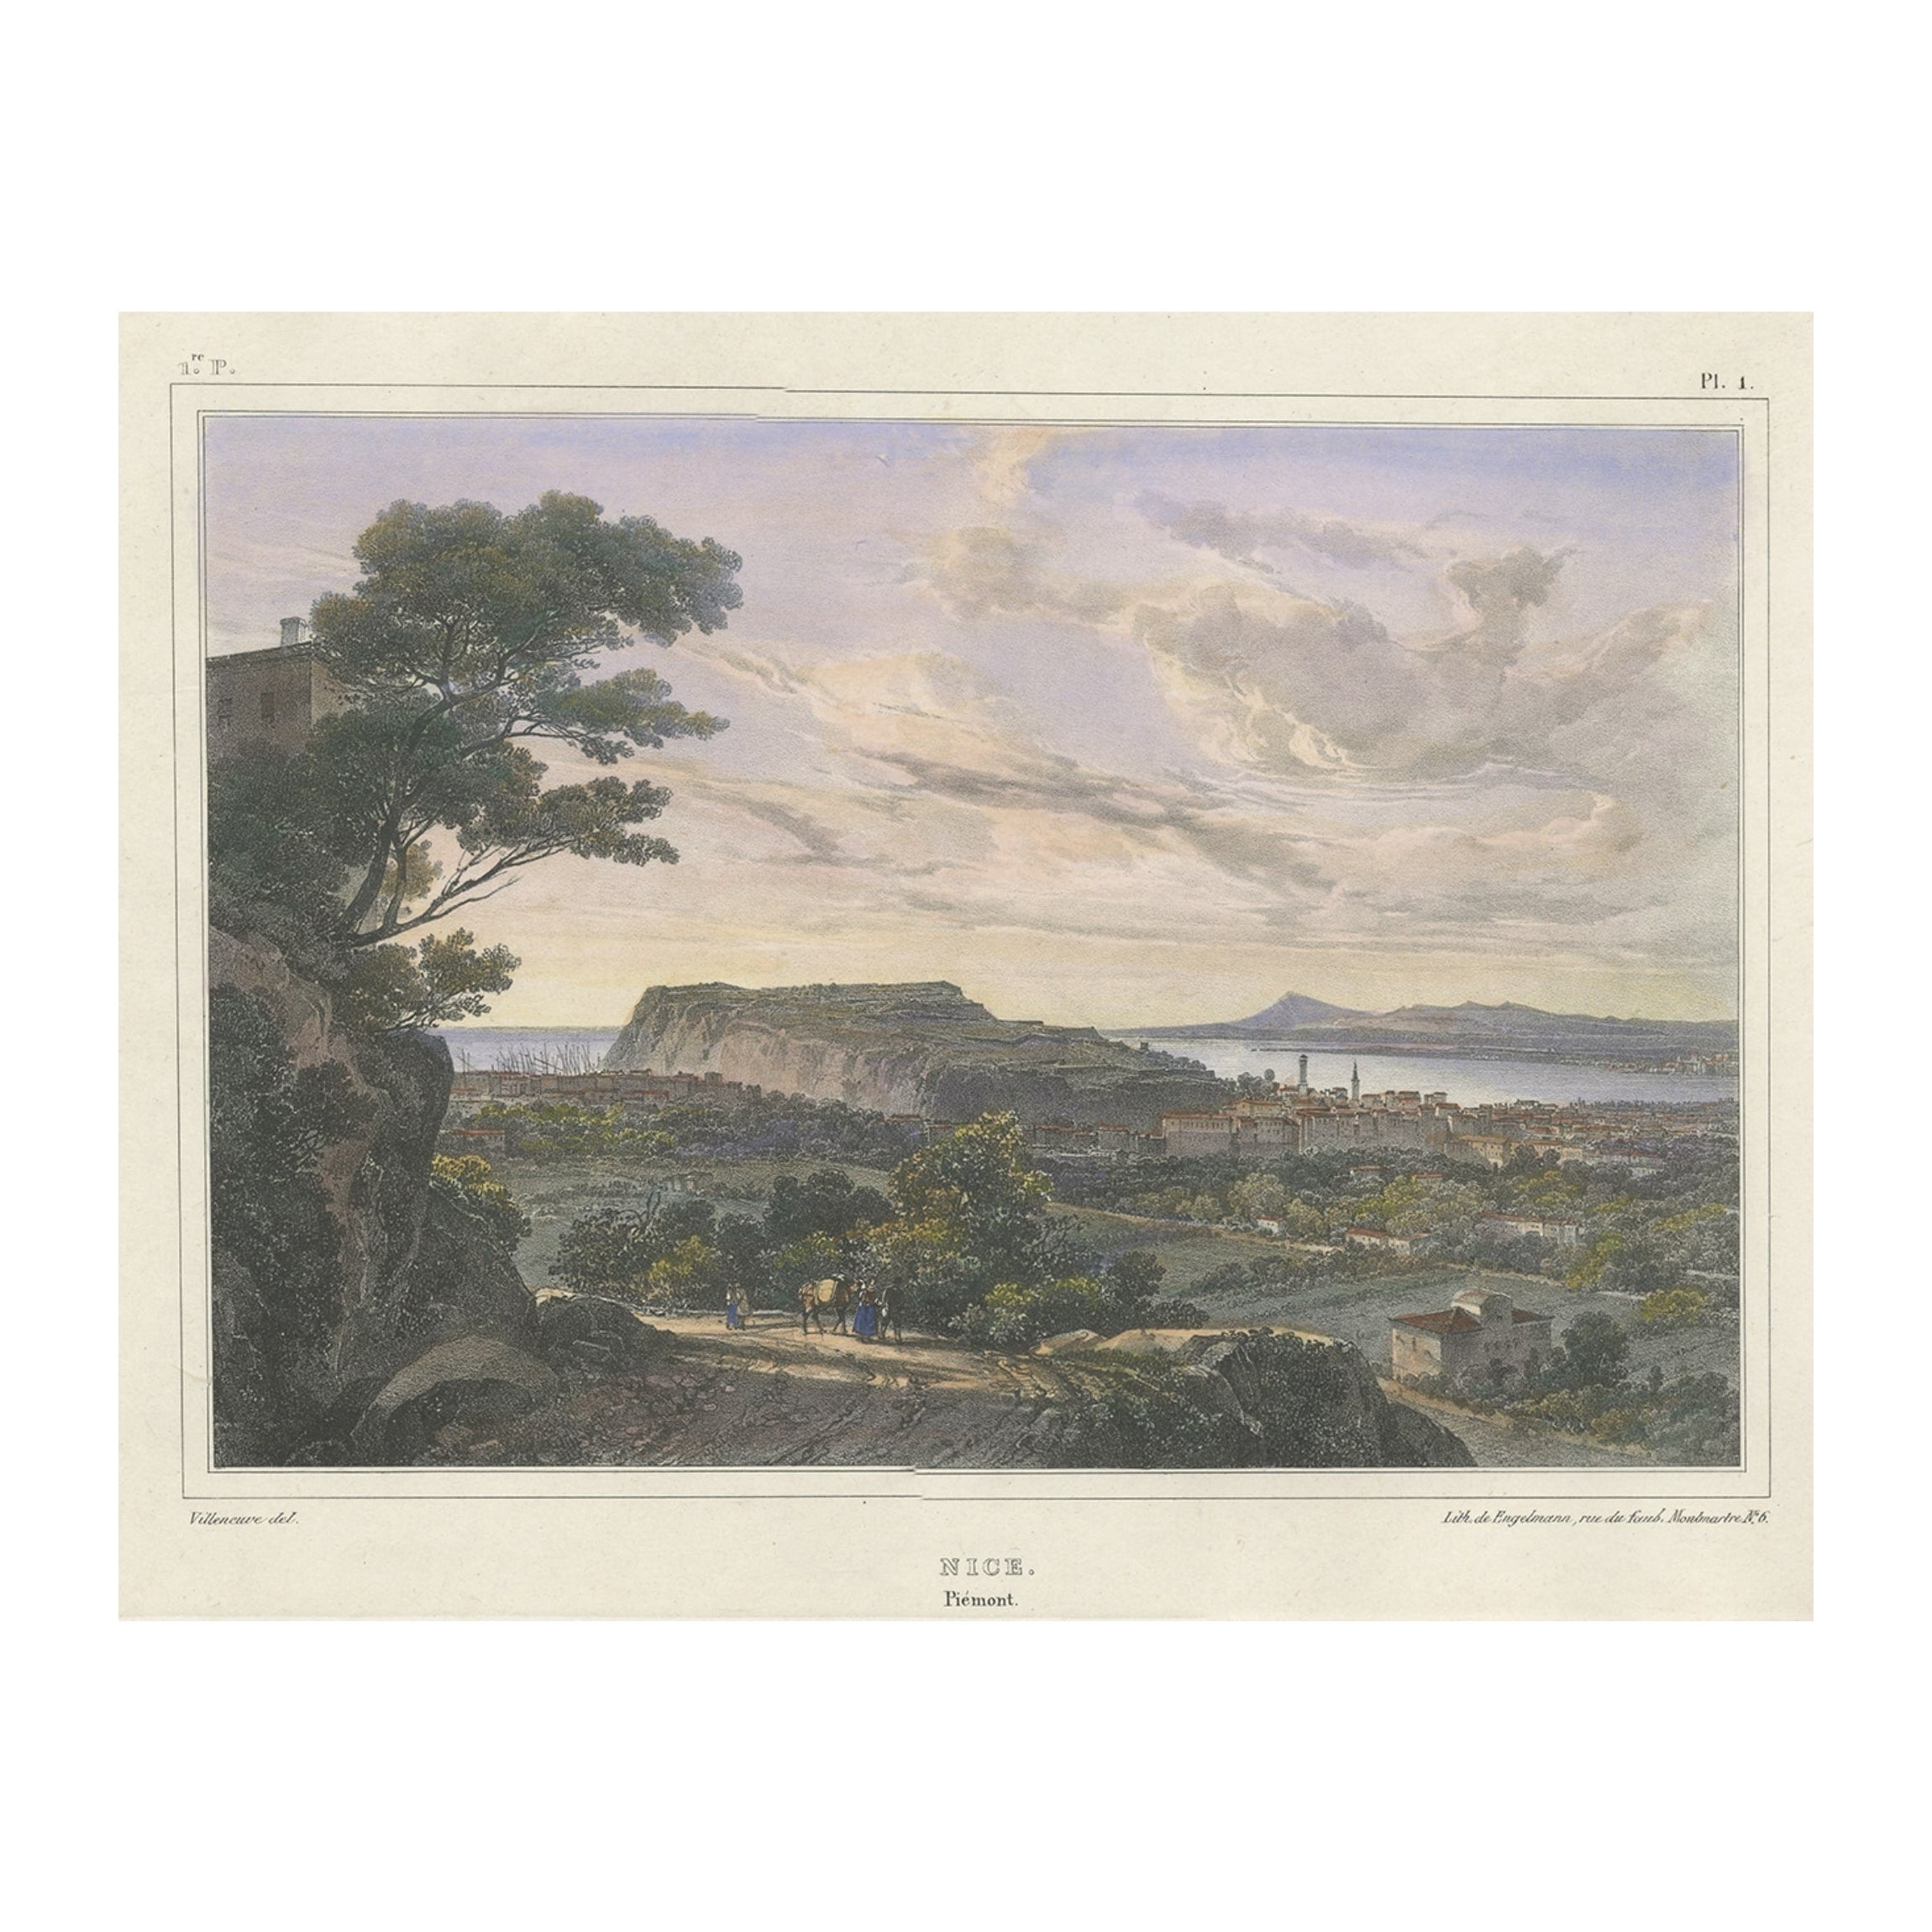 Impression ancienne de Piemont, Nice en France, vers 1830